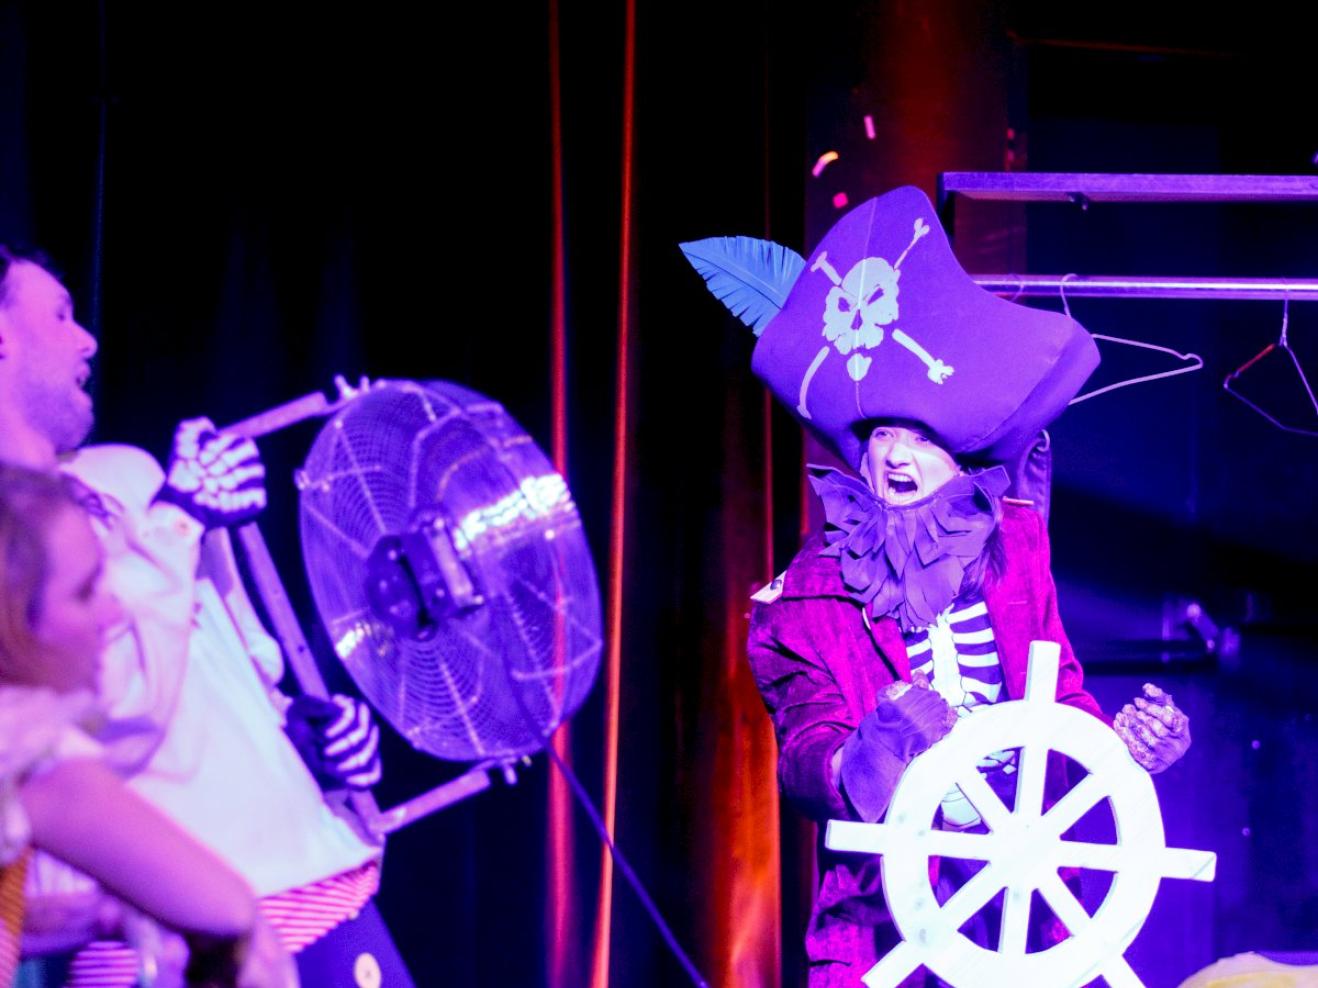 Pirat mit Steuerrad, ein Schauspieler bläst ihr mit einem Ventilator Wind entgegen.